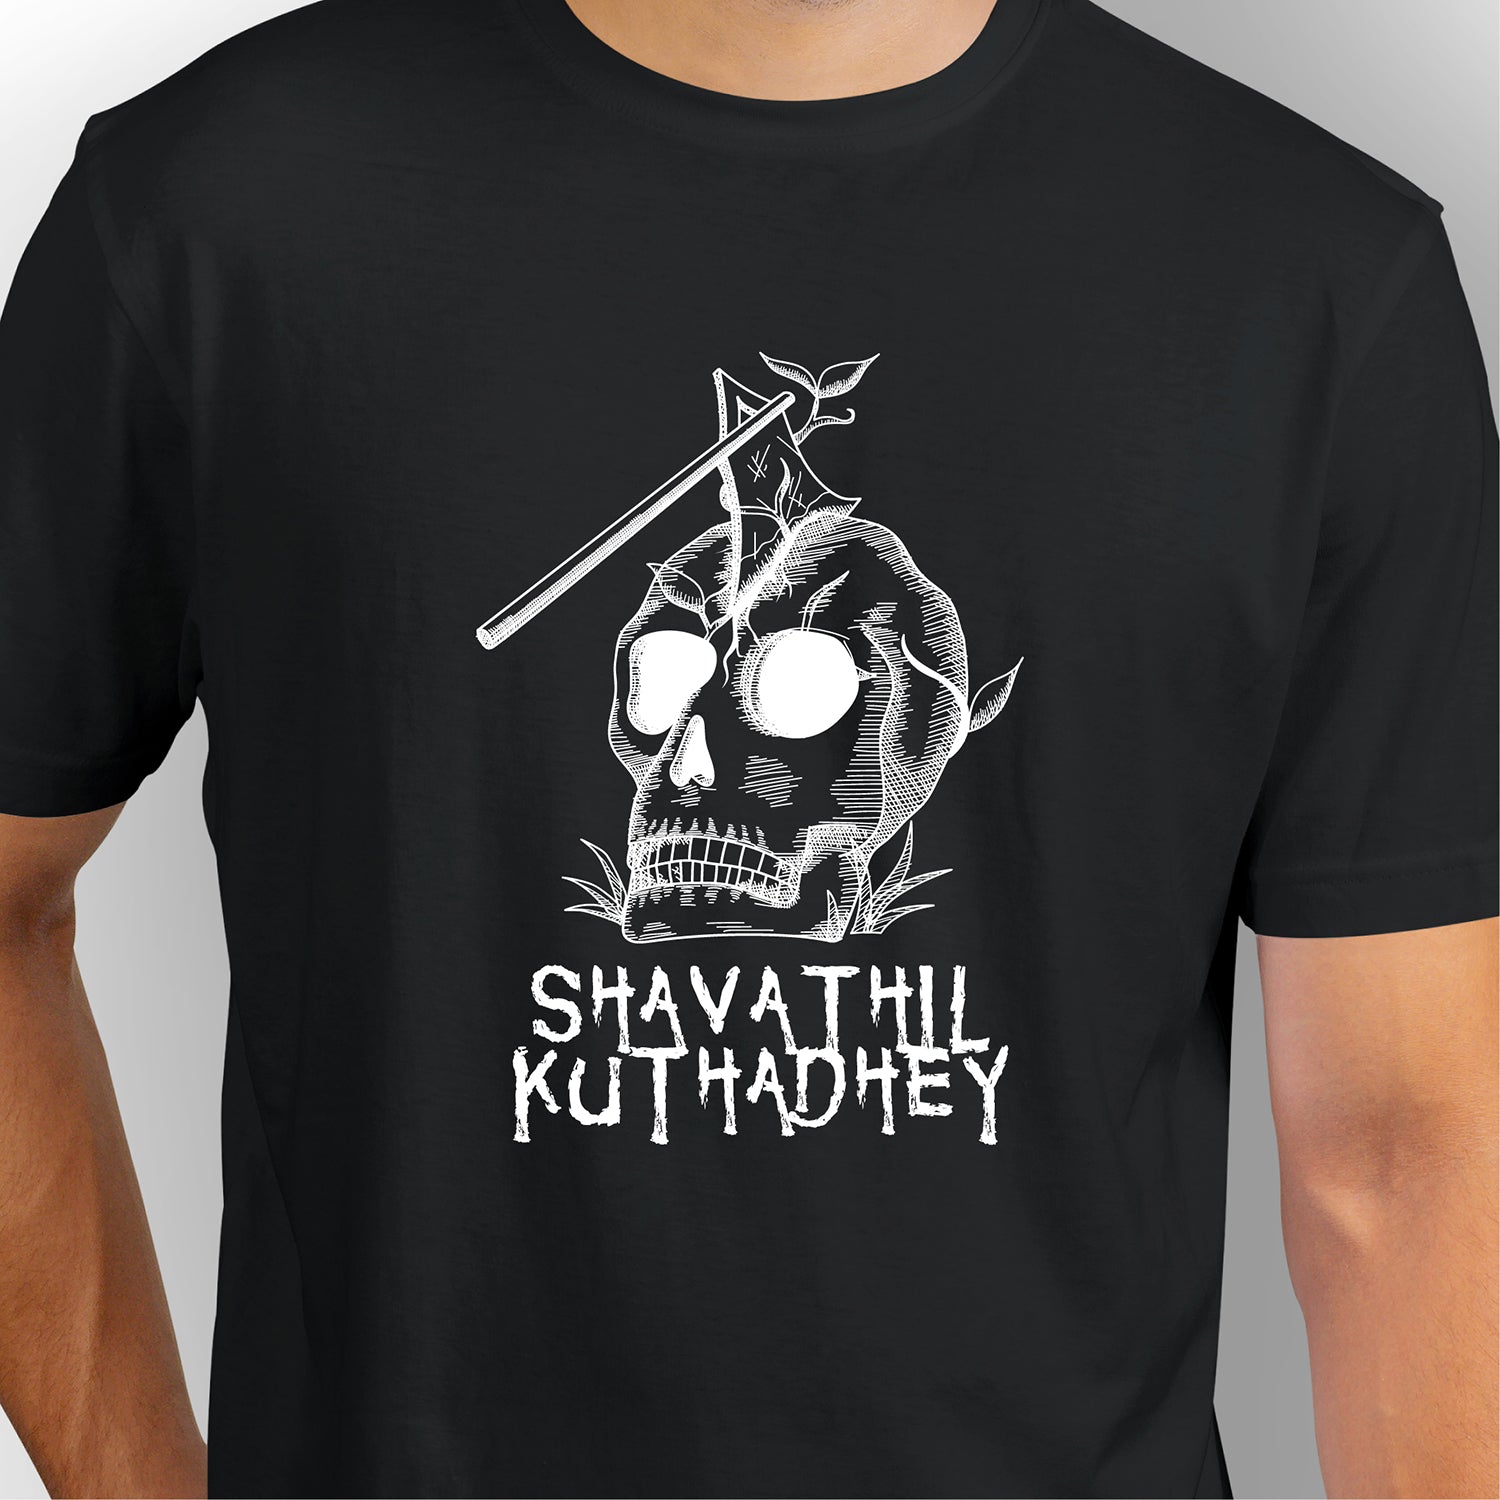 Shavathil Kuthadhey | CARBON-COPY | Premium Smart-Fit |Unisex T-Shirt| Black T-Shirt 